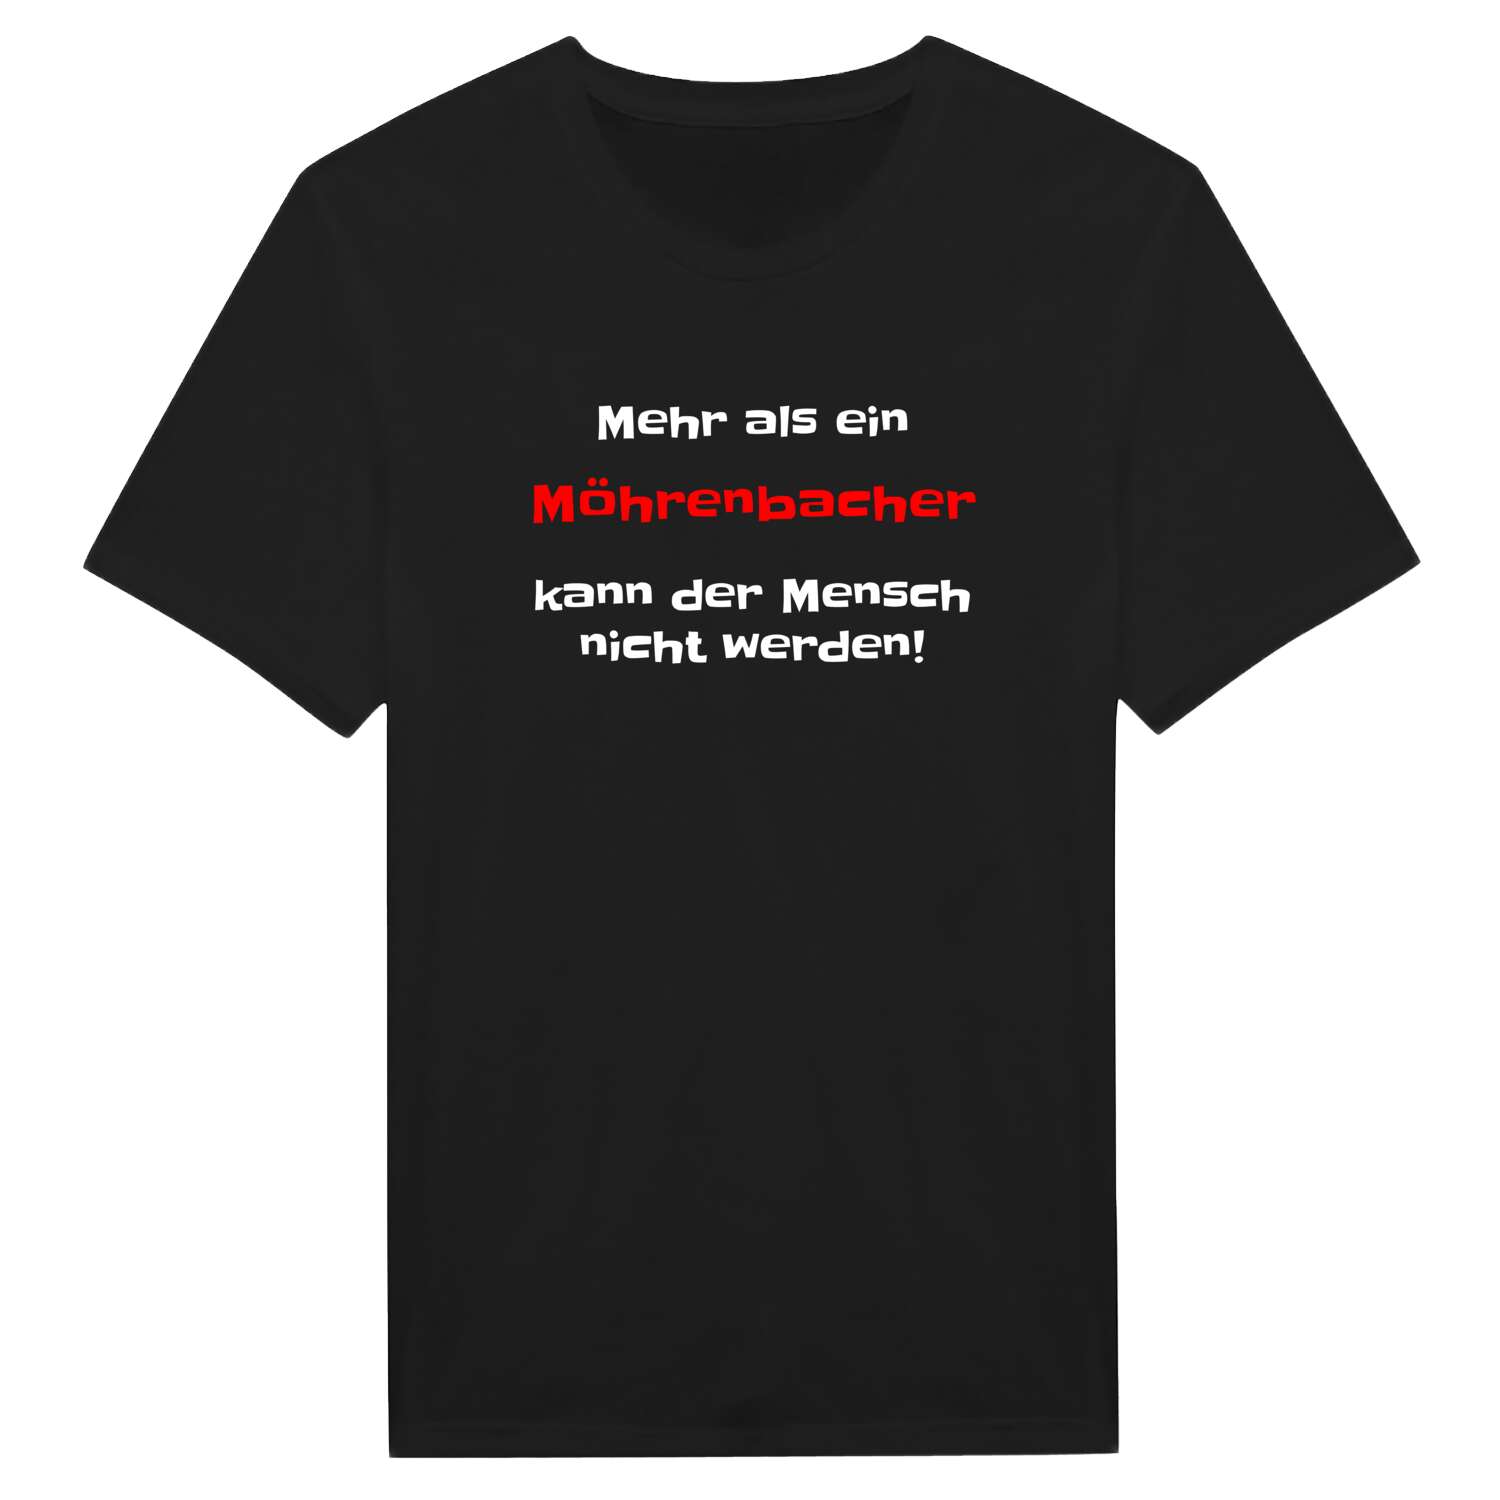 Möhrenbach T-Shirt »Mehr als ein«